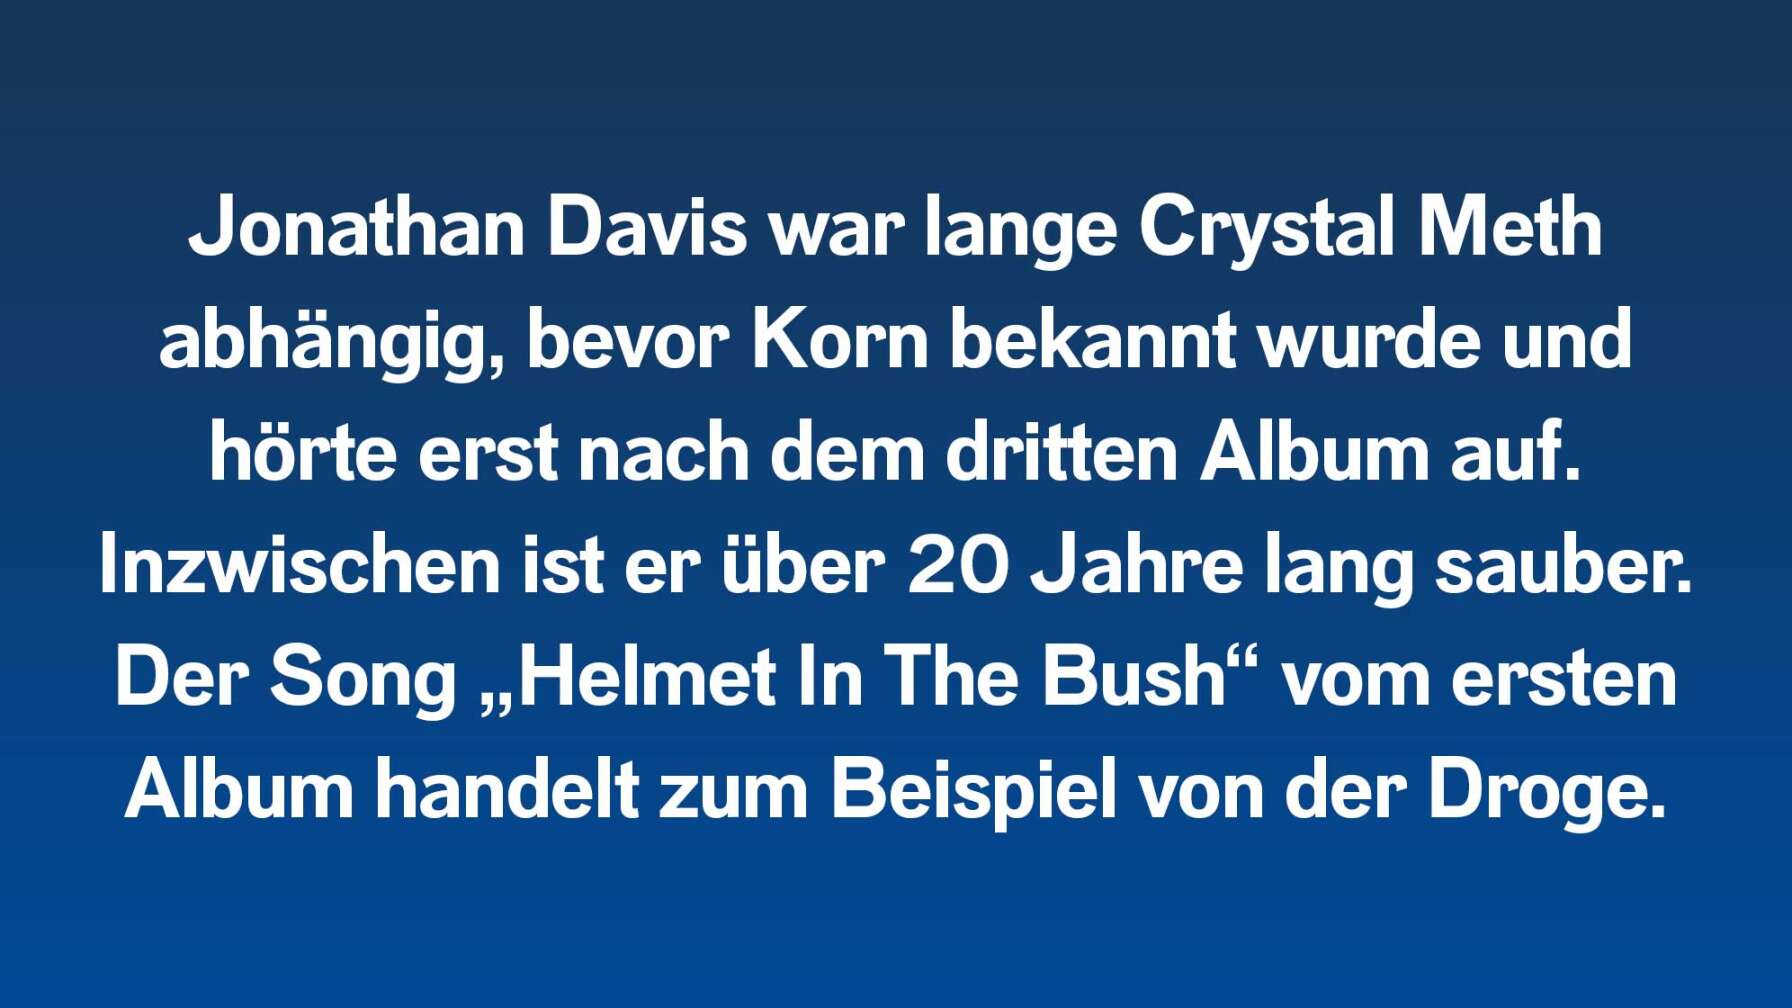 Jonathan Davis war lange Crystal Meth abhängig, bevor Korn bekannt wurde und hörte erst nach dem dritten Album auf. Inzwischen ist er über 20 Jahre lang sauber. Der Song „Helmet In The Bush“ vom ersten Album handelt zum Beispiel von der Droge.